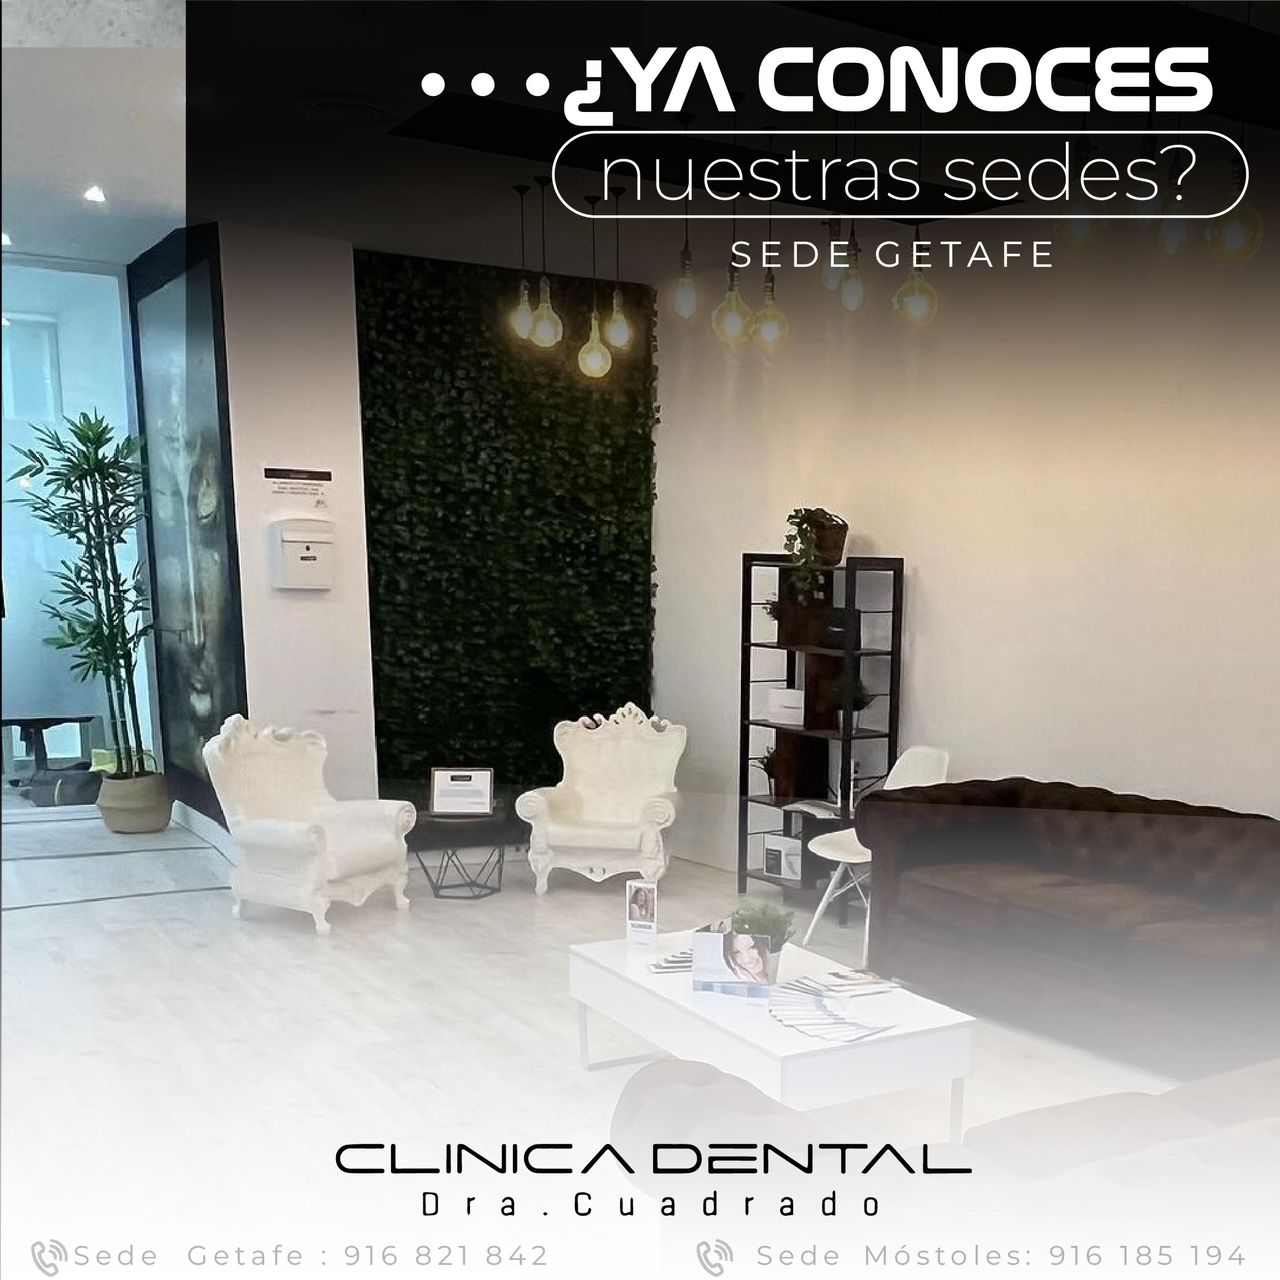 ¿Buscas una clínica dental profesional en Getafe? ¡La Clínica Dental Dra. Cuadrado es tu mejor opción!